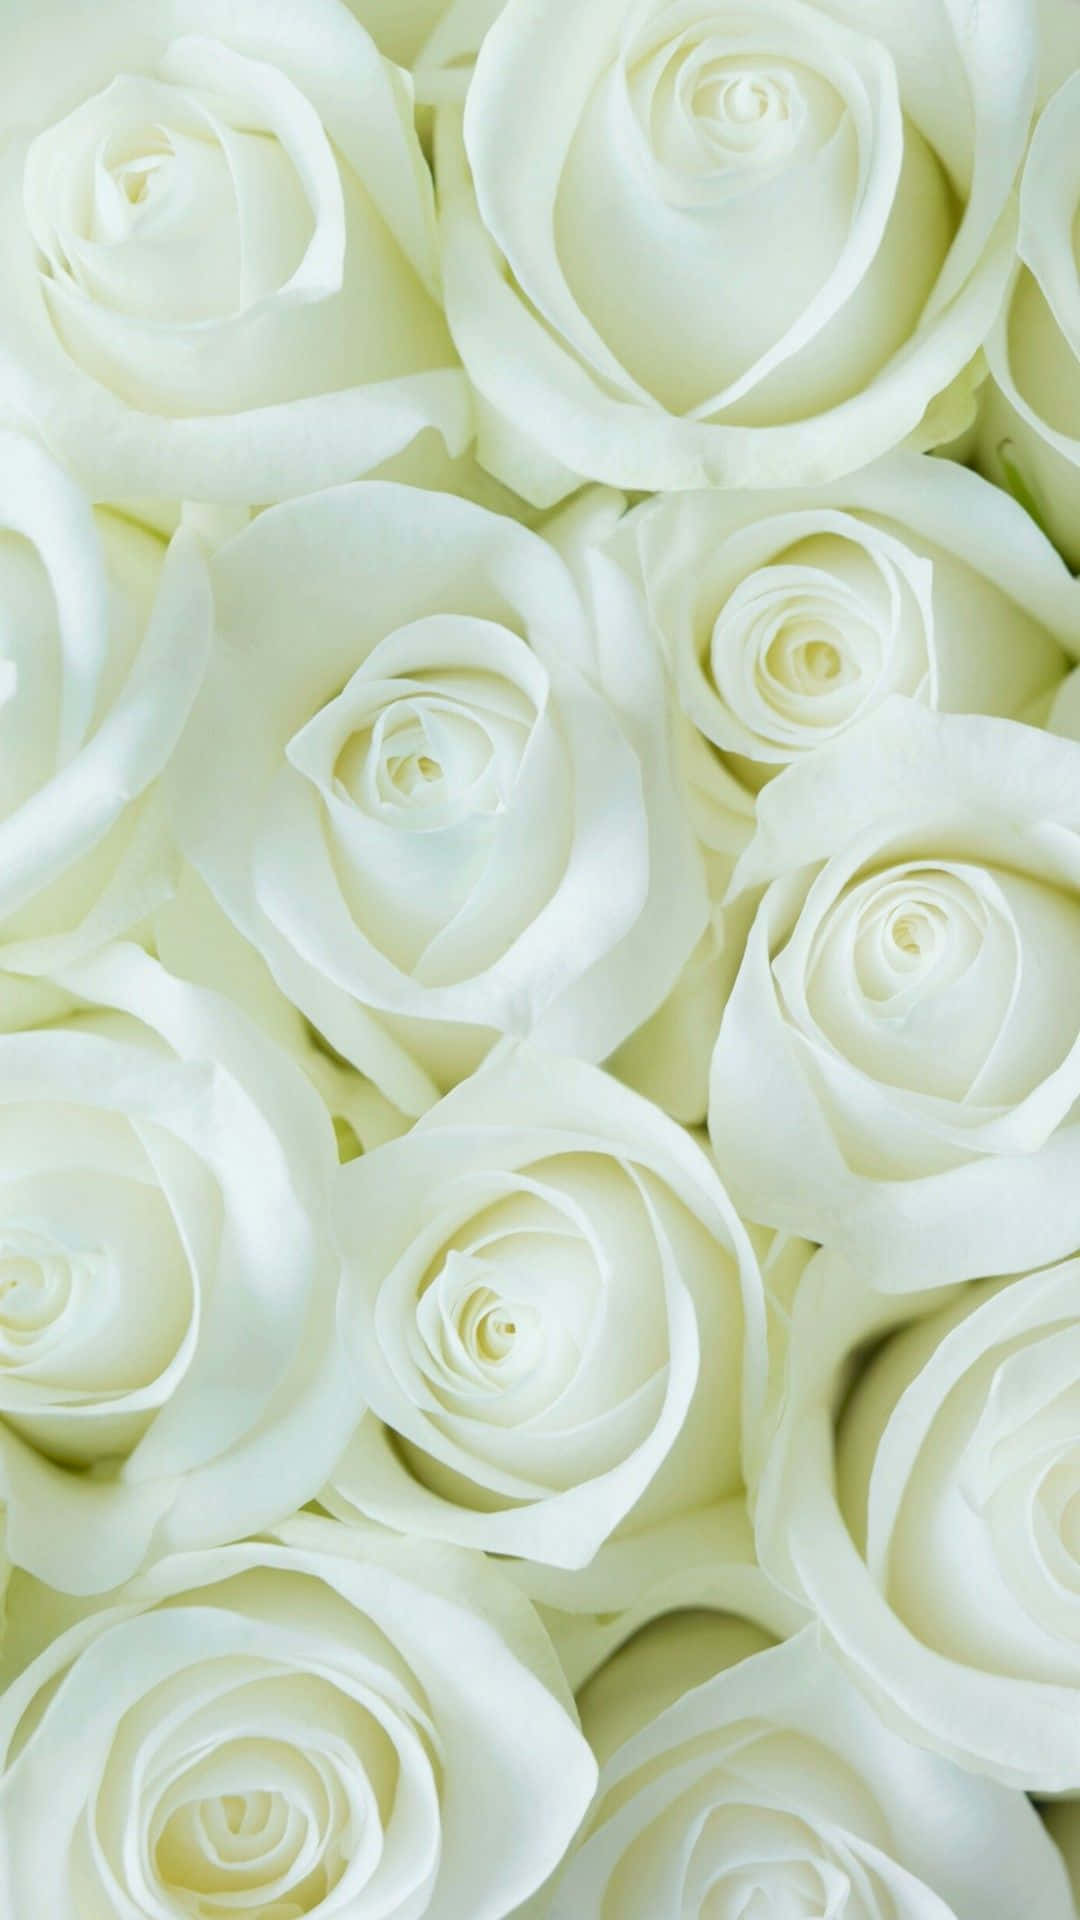 Etsmukt Buket Af Hvide Blomster I En Vase I Vintage-stil.